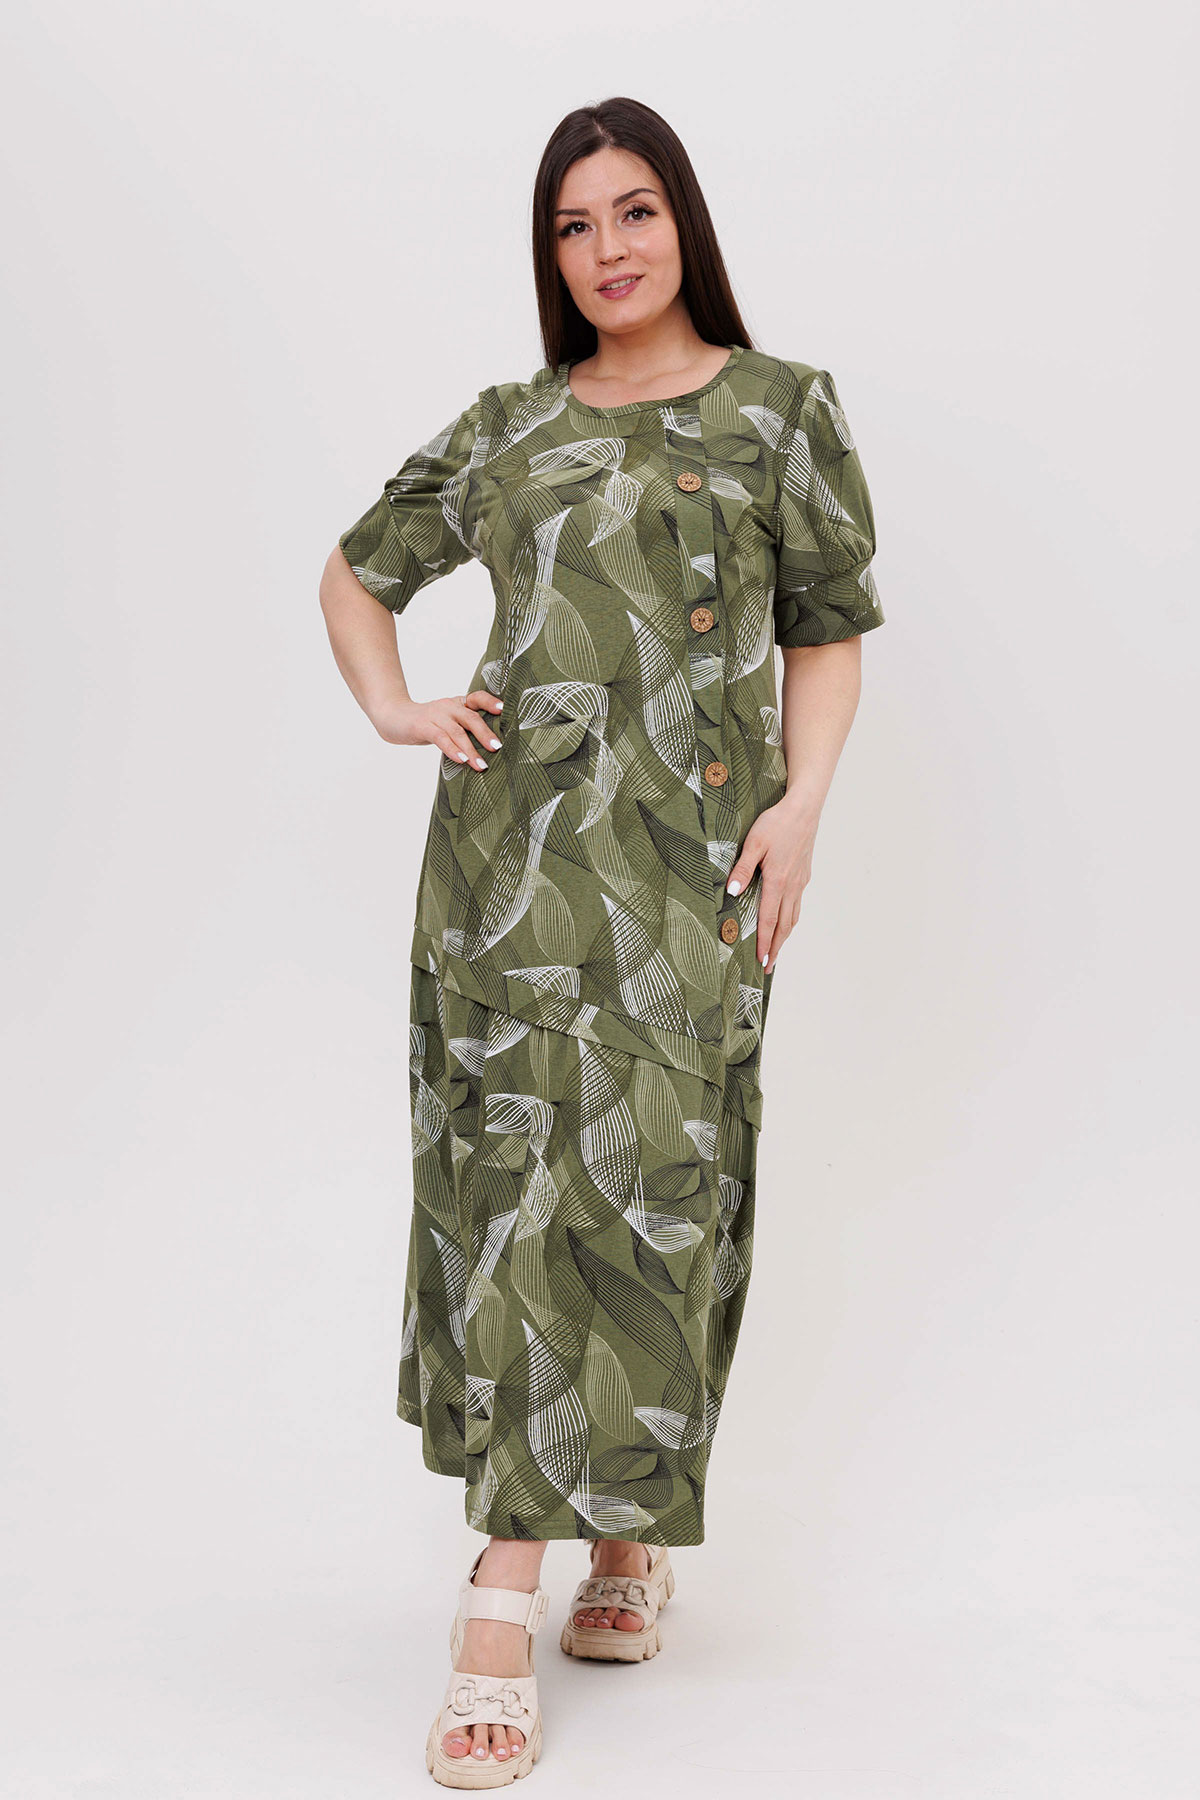 Жен. платье повседневное арт. 23-0541 Зеленый р. 54 Моделлини, размер 54 - фото 3